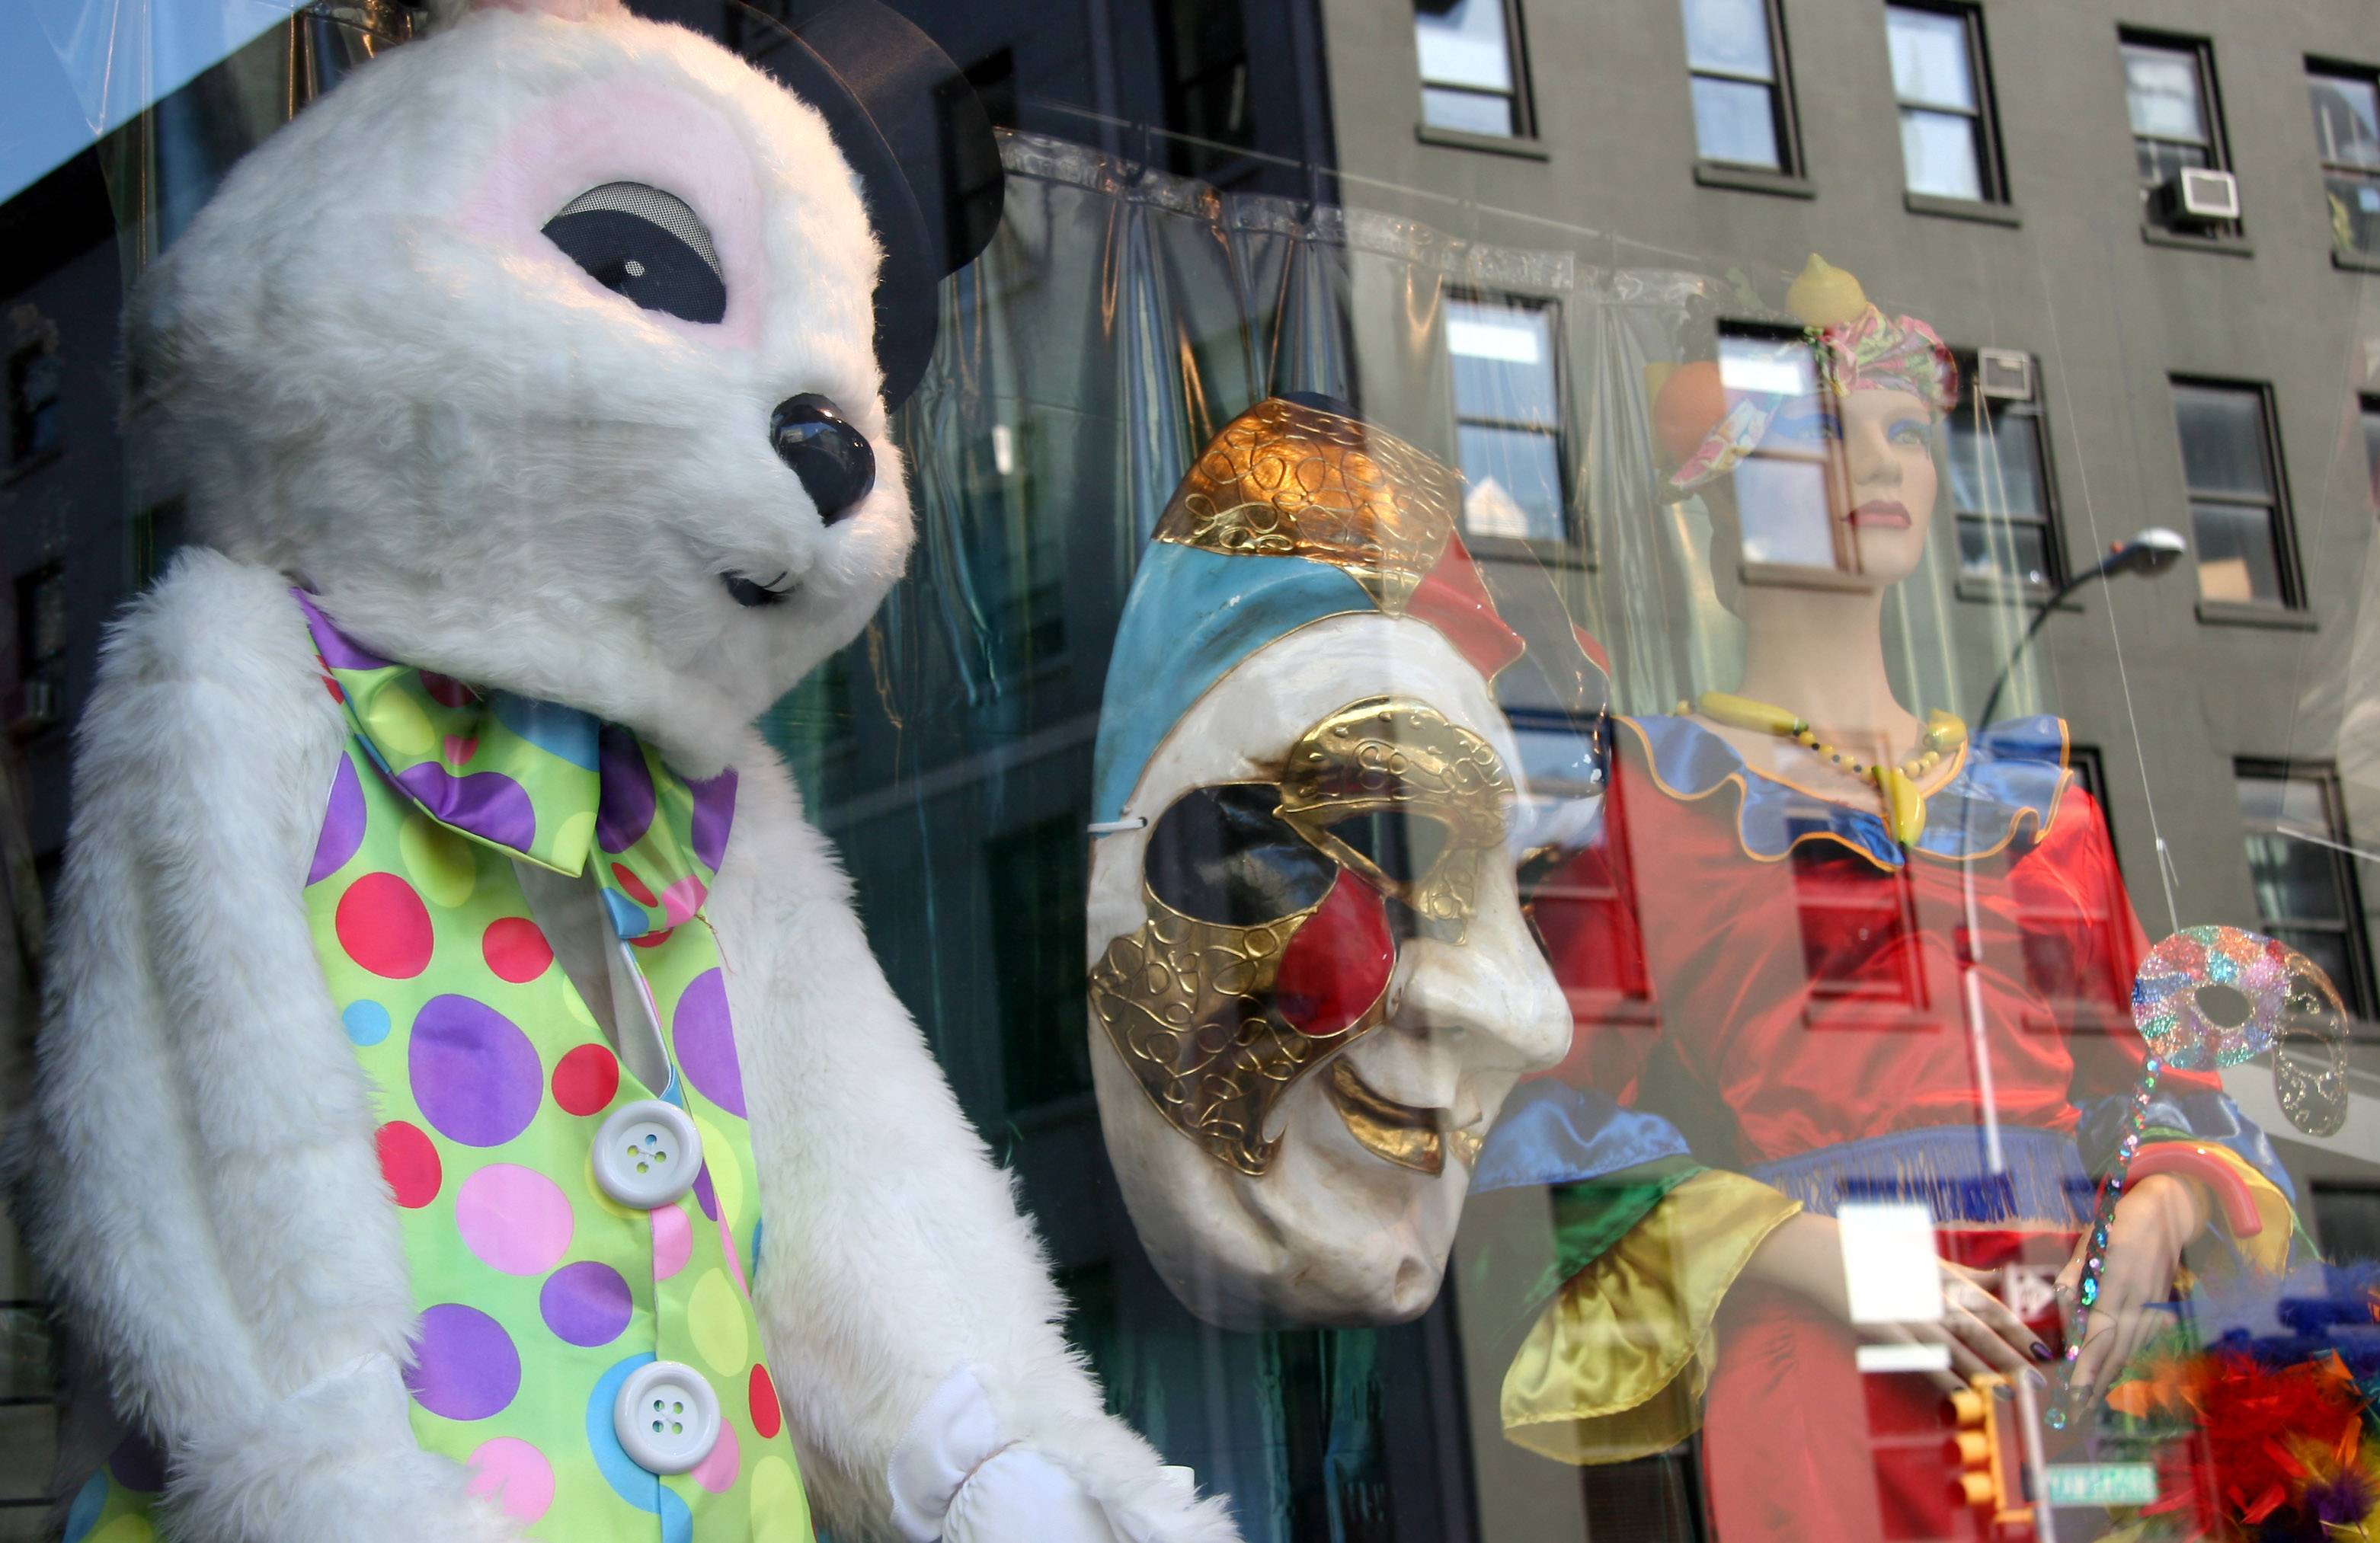 New York Costumes Store